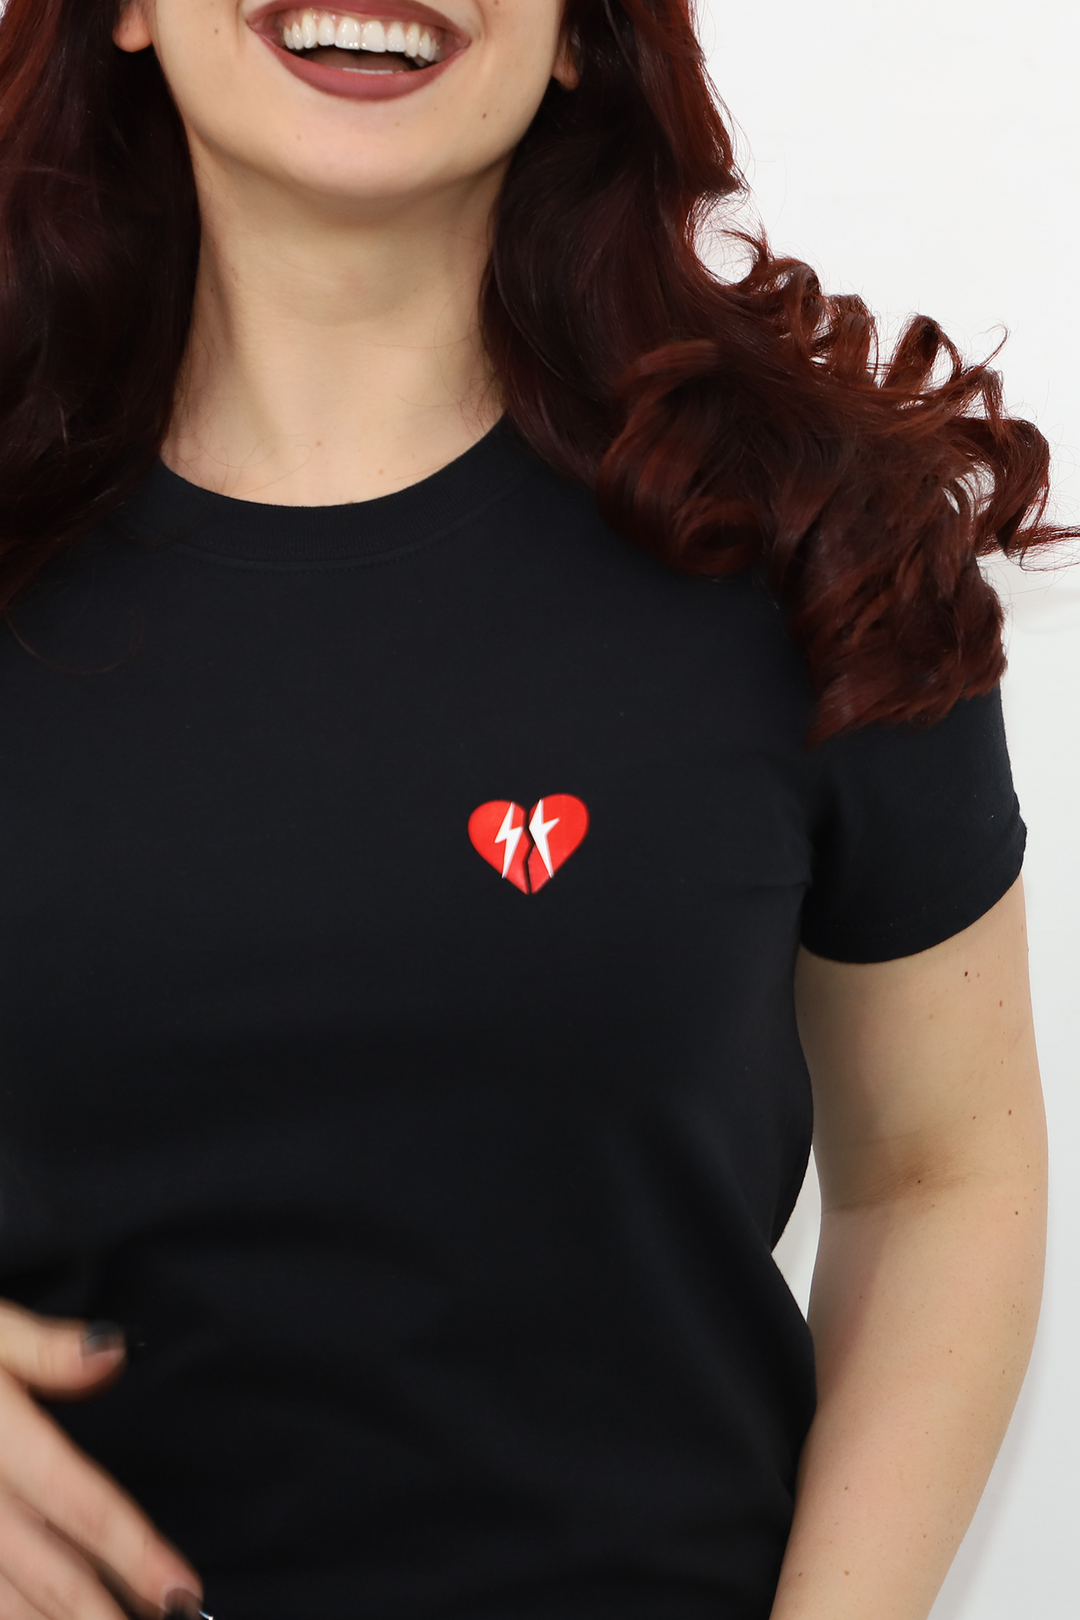 T-shirt de coeur brisé💔